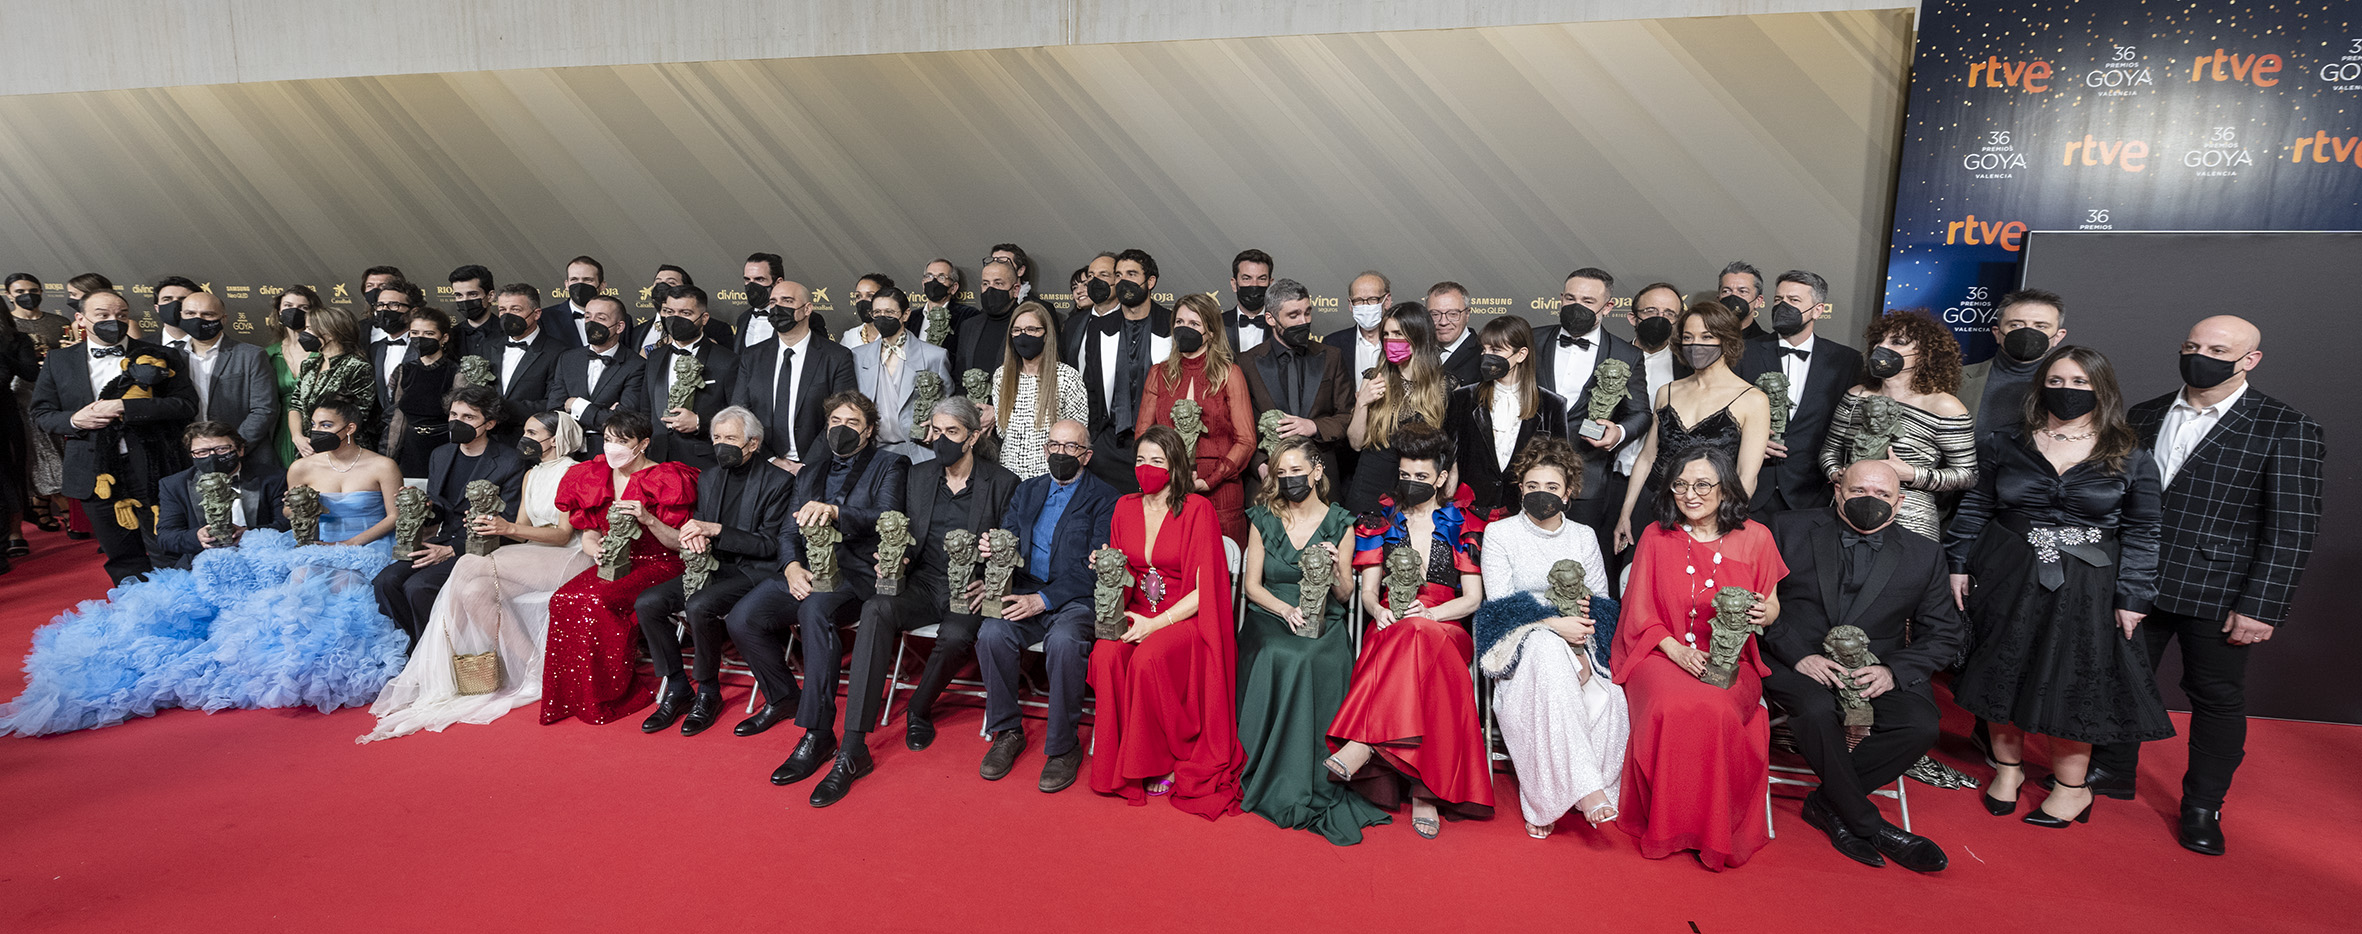 Las cuatro películas más galardonadas en los Premios Goya se estrenaron mundialmente en San Sebastián